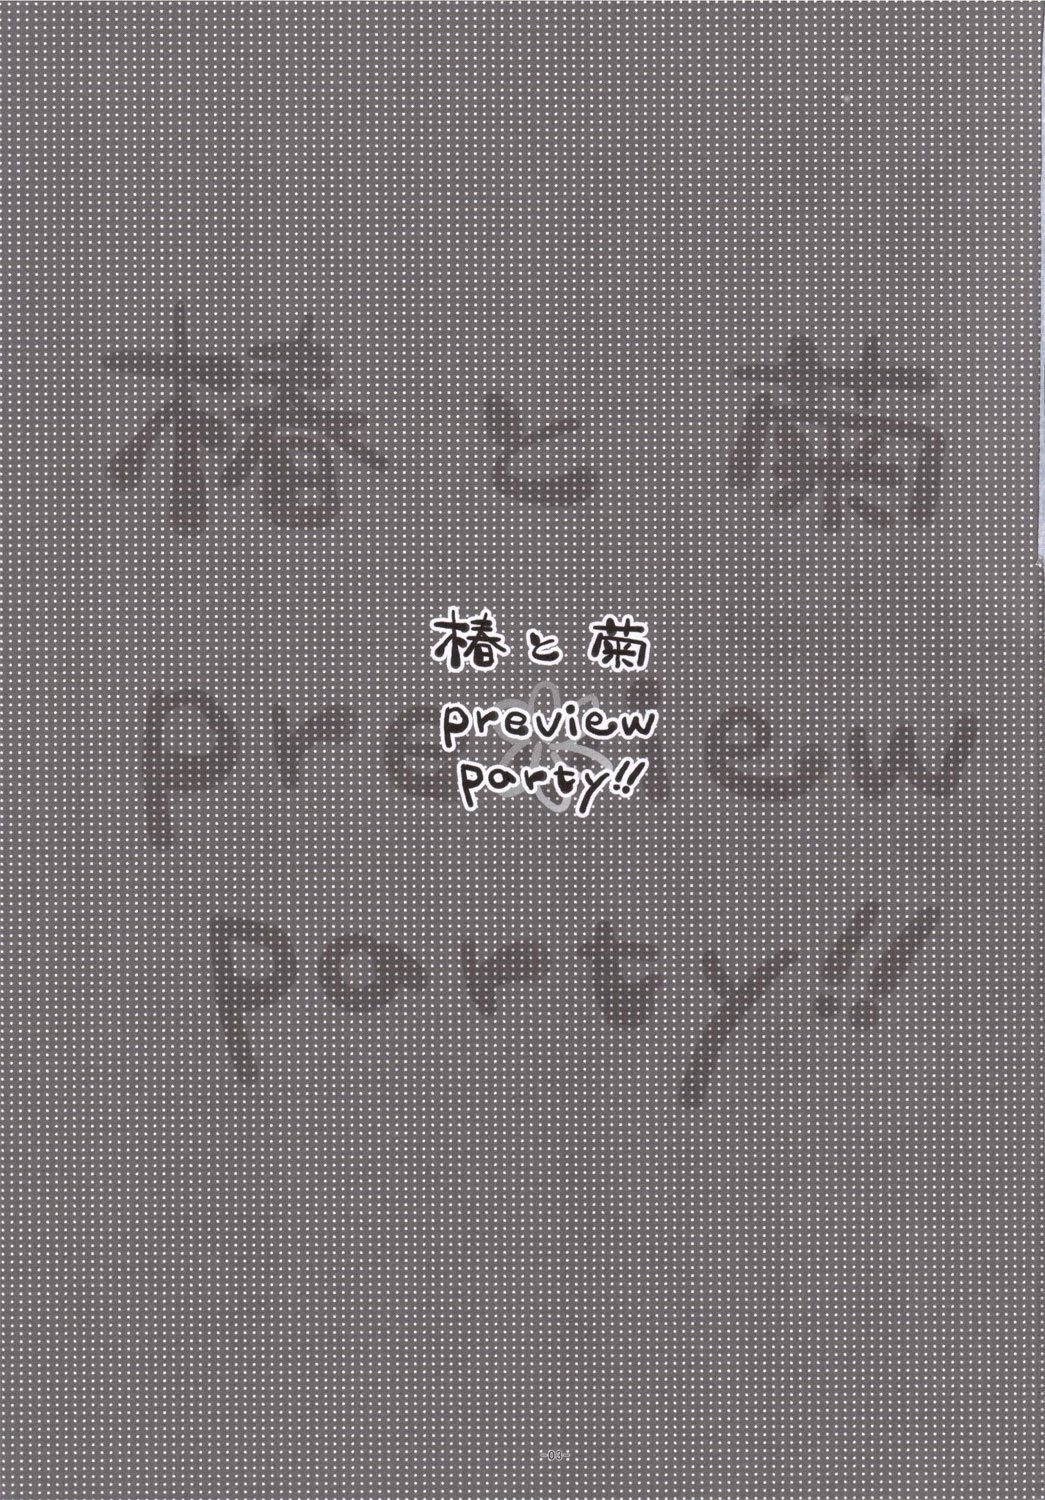 [有葉と愉快な仲間たち] 椿と菊 1.5 Preview Party!!